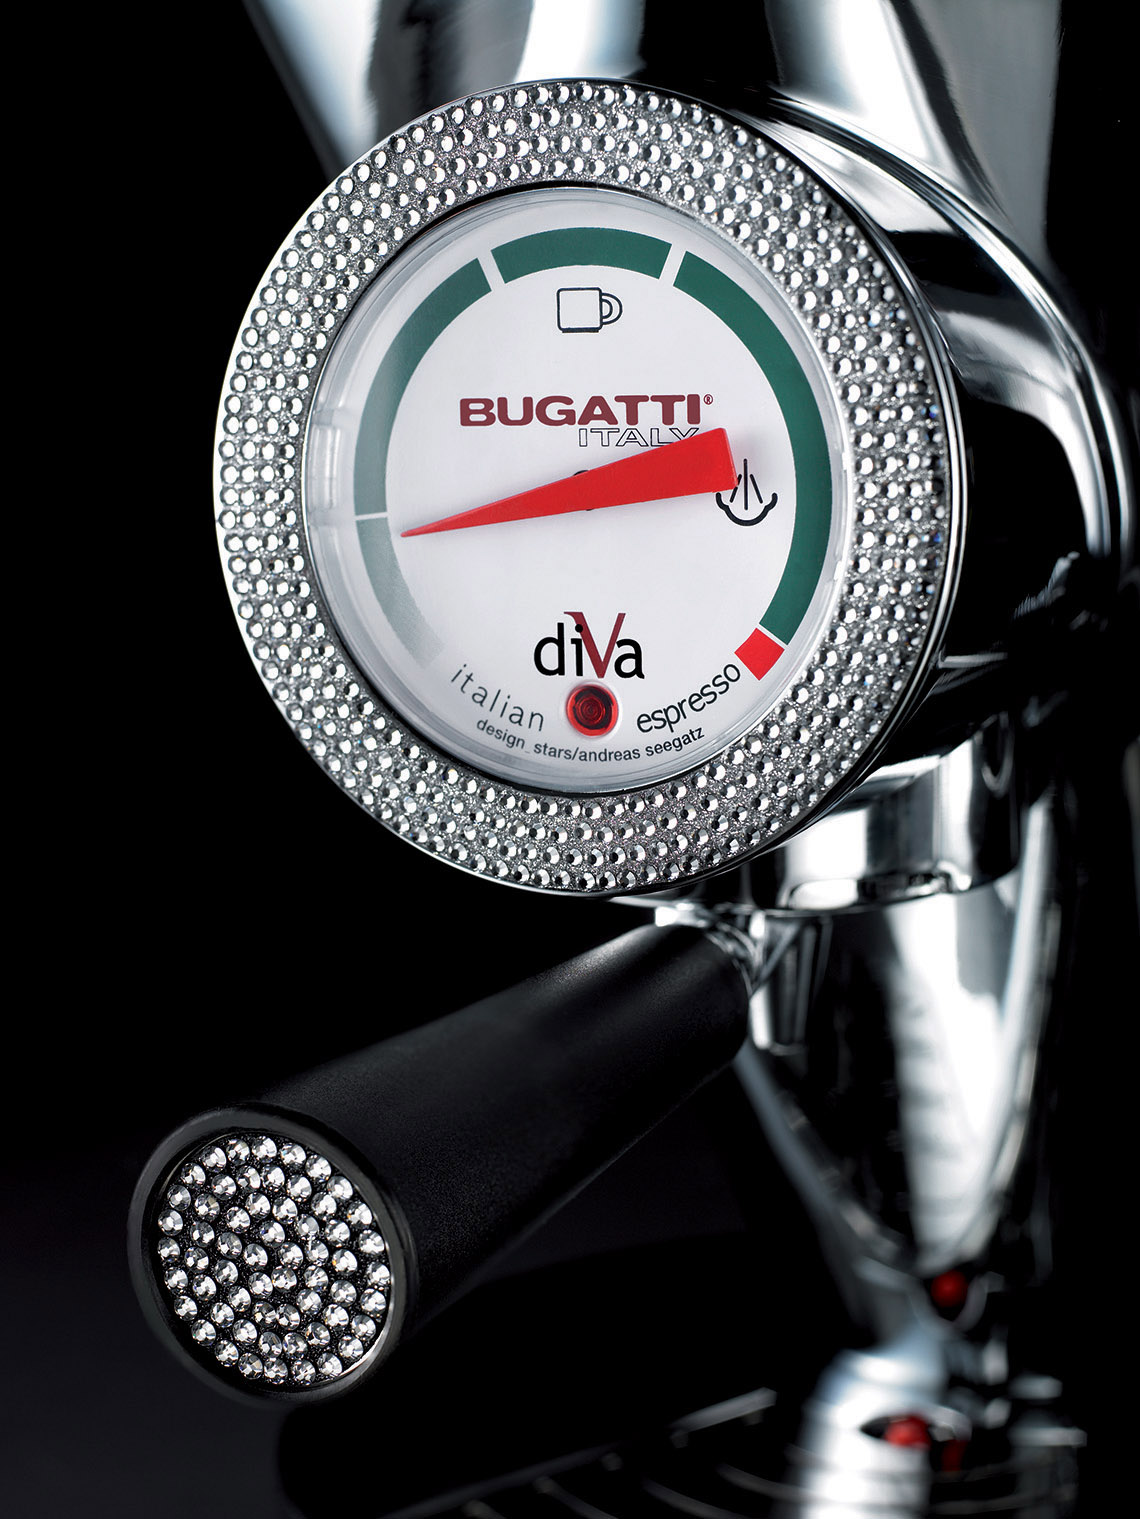 Pokryte kryształkami AGD Bugatti to prawdziwe dzieło sztuki rzemieślniczej